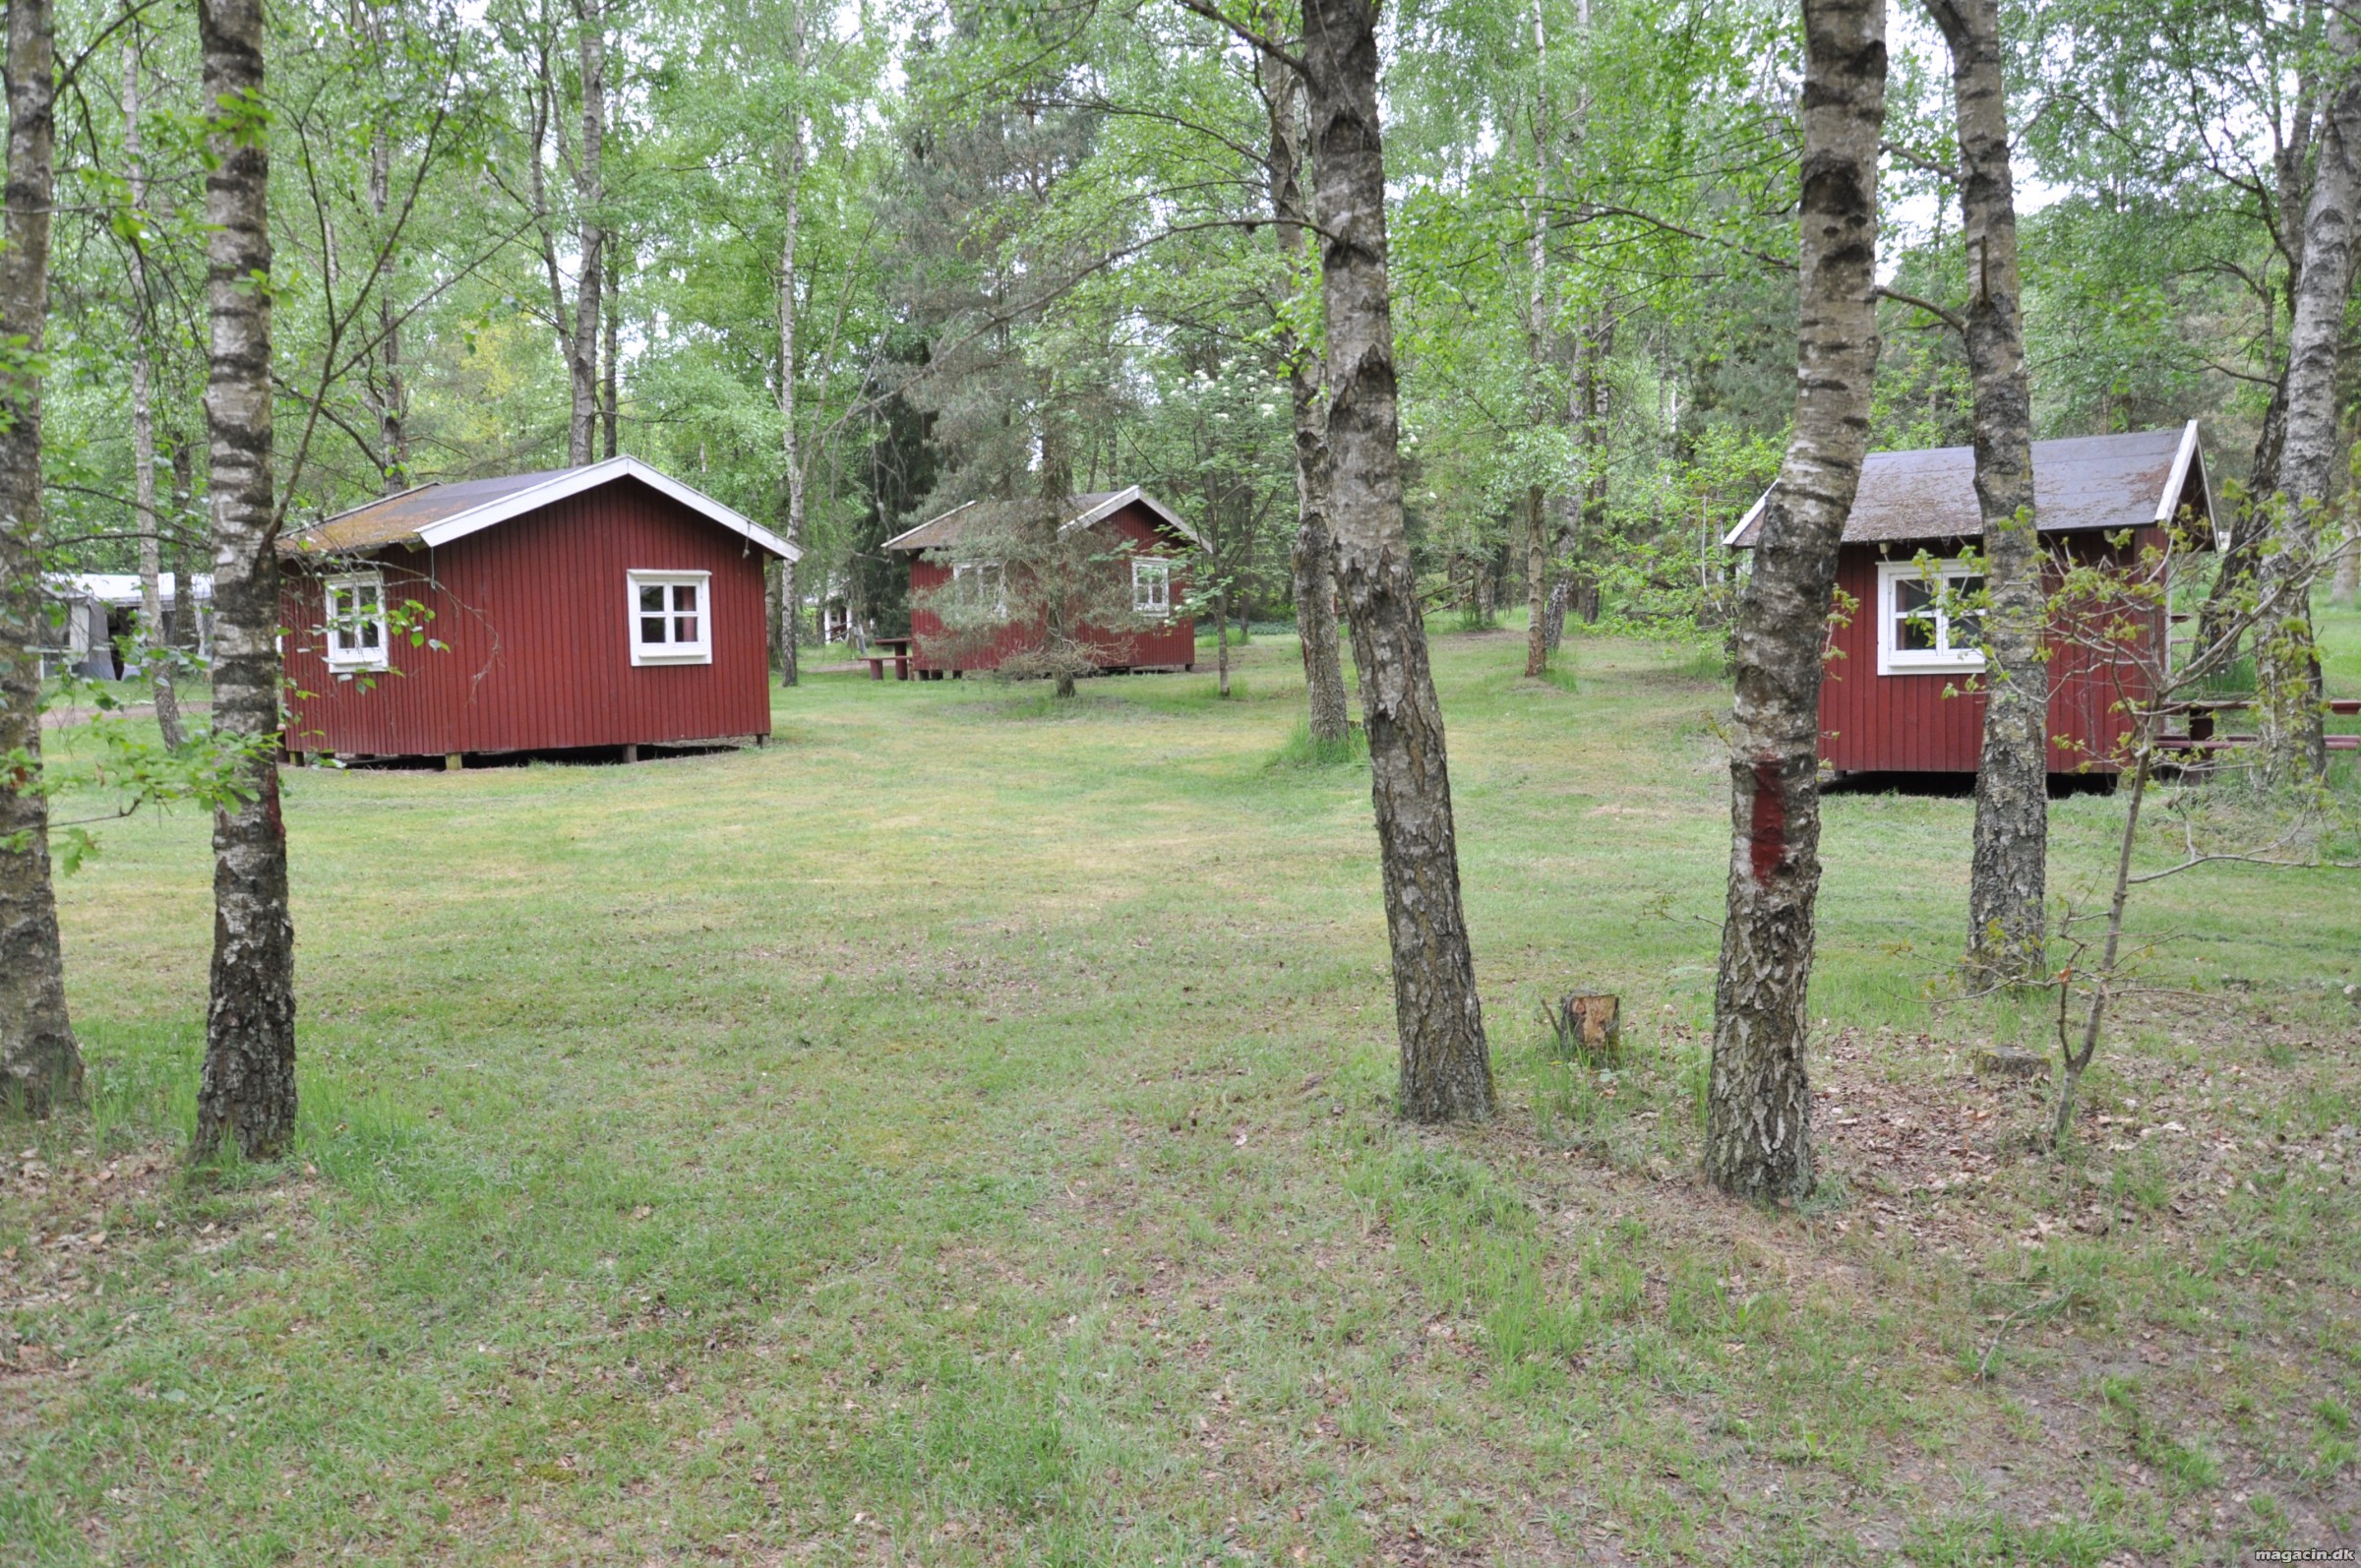 Djurs Hytteby & Camping